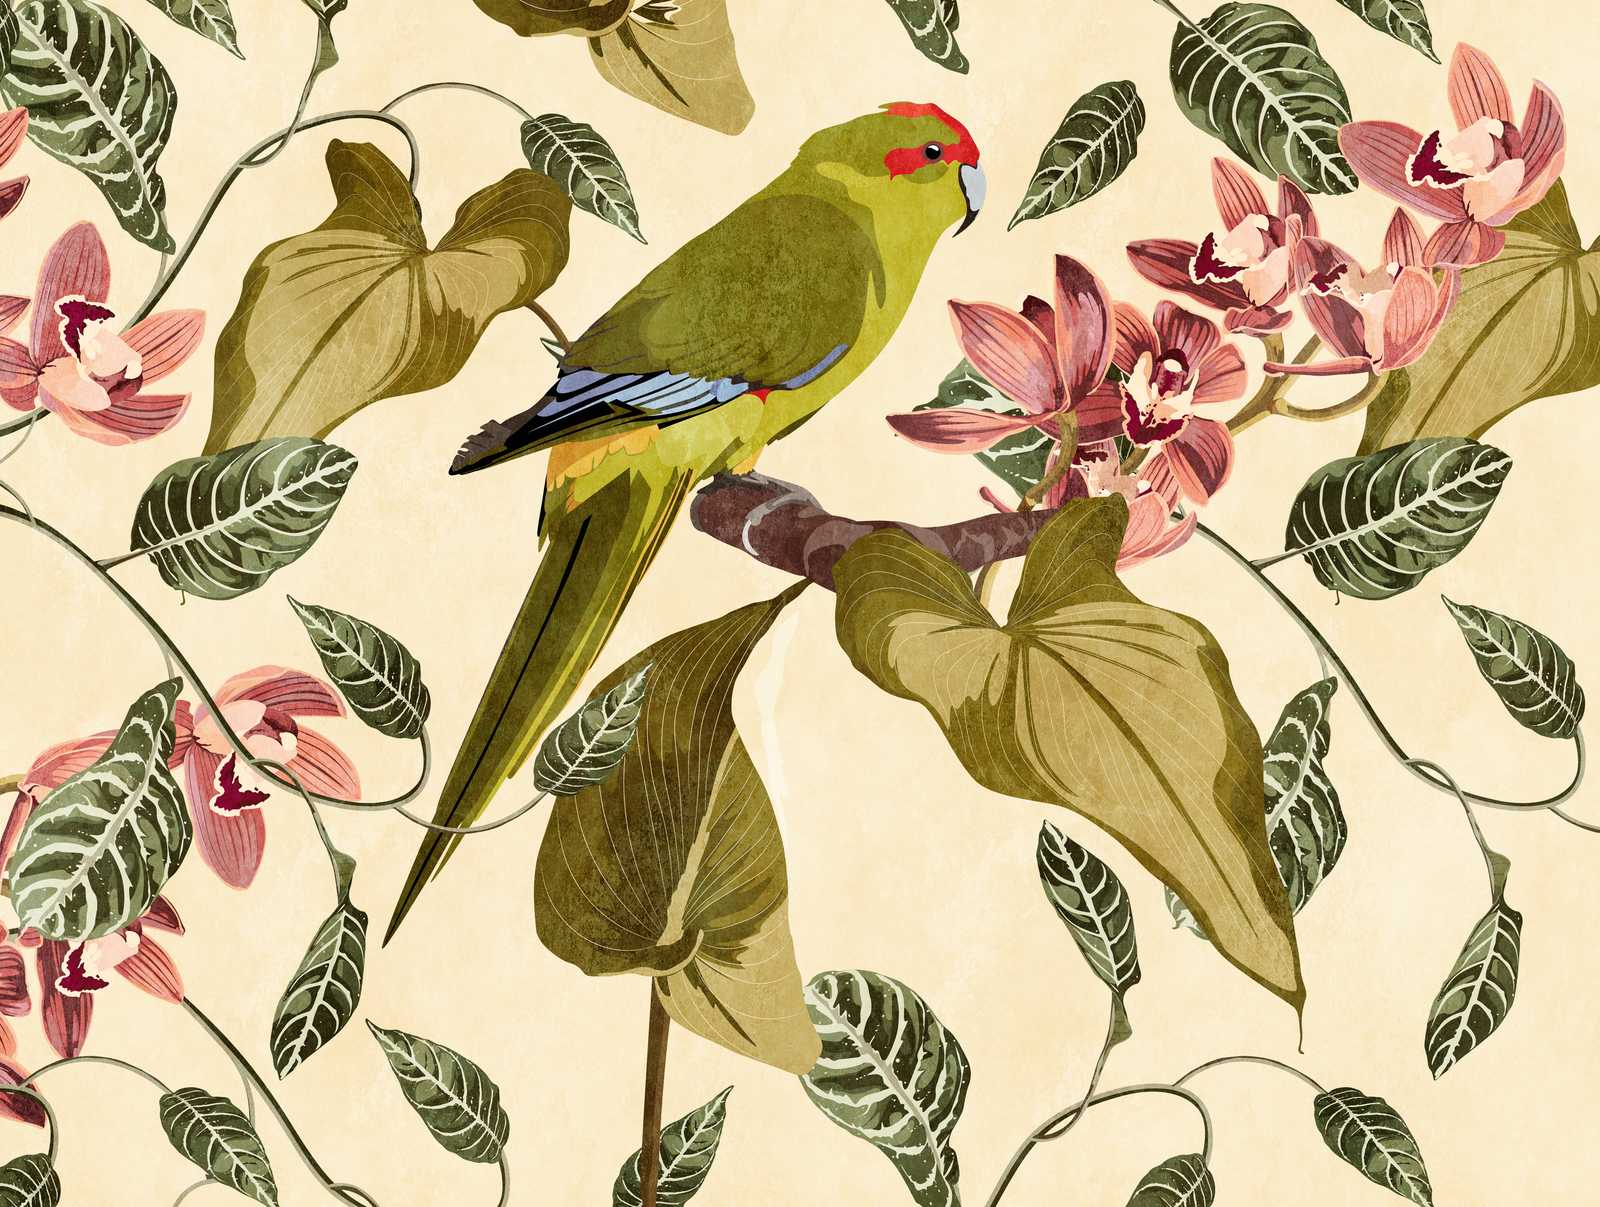             Wallpaper novelty - motif wallpaper parrot & orchids art print
        